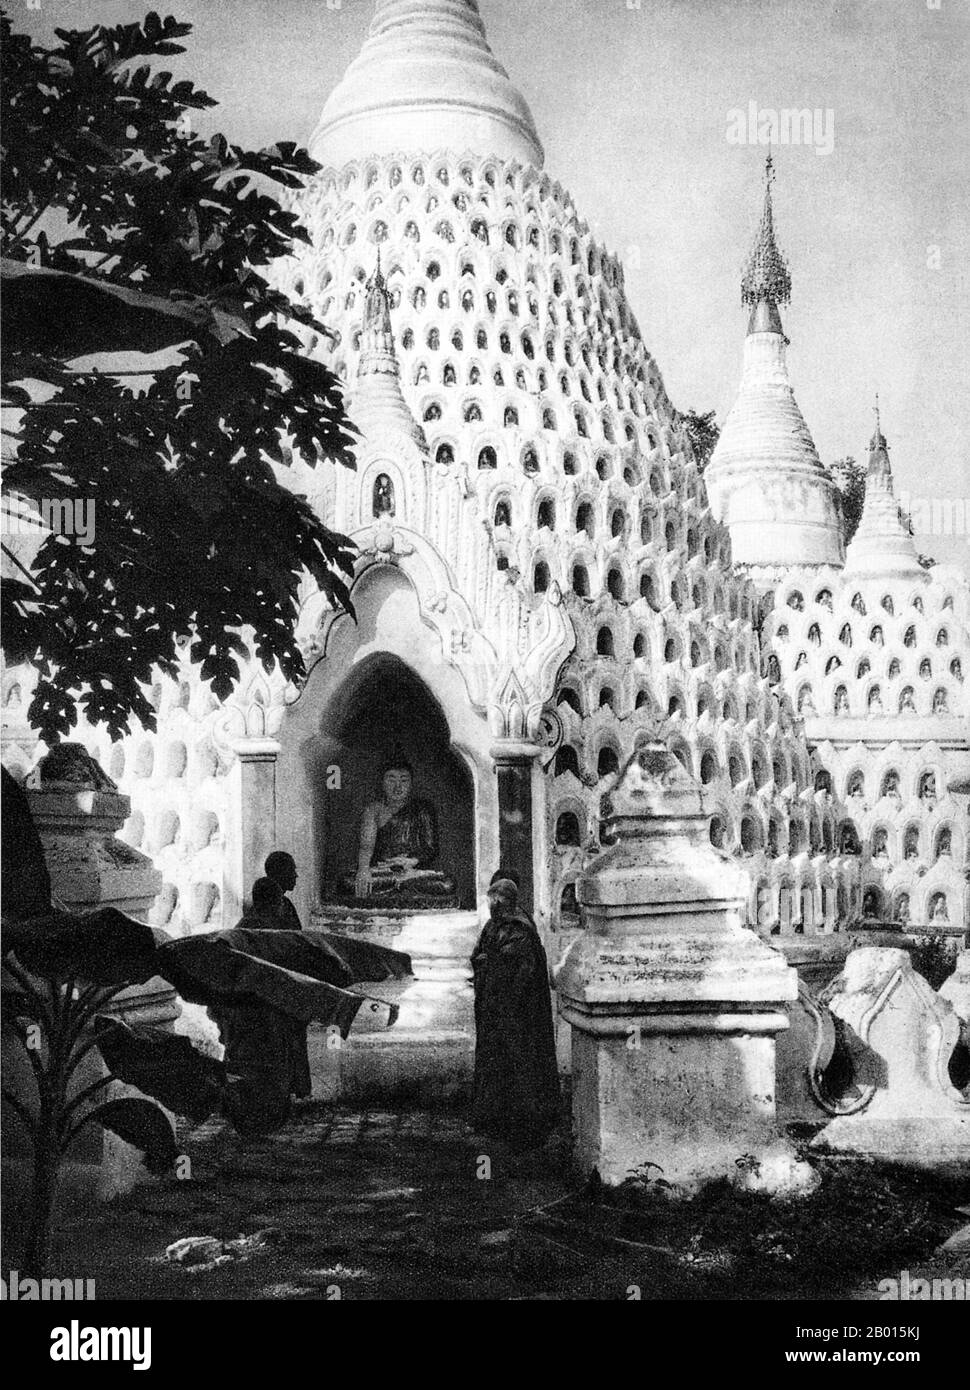 Birmanie/Myanmar: Chedis à un monastère d'Ava, c. années 1920. Notez qu'il y a beaucoup de niches sur les stupas pour placer des offrandes et de petites images de Bouddha. AVA était la capitale de la Birmanie de 1364 à 1841 et fut fondée par le roi Thadominbya sur une île artificielle au confluent de l'Irrawaddy et du Myitnge créé en creusant un canal reliant les deux rivières. Avant cela, Sagaing était la capitale, mais après que Sagaing est tombé au Shan, le tribunal a traversé la rivière pour se rendre à Ava. Banque D'Images